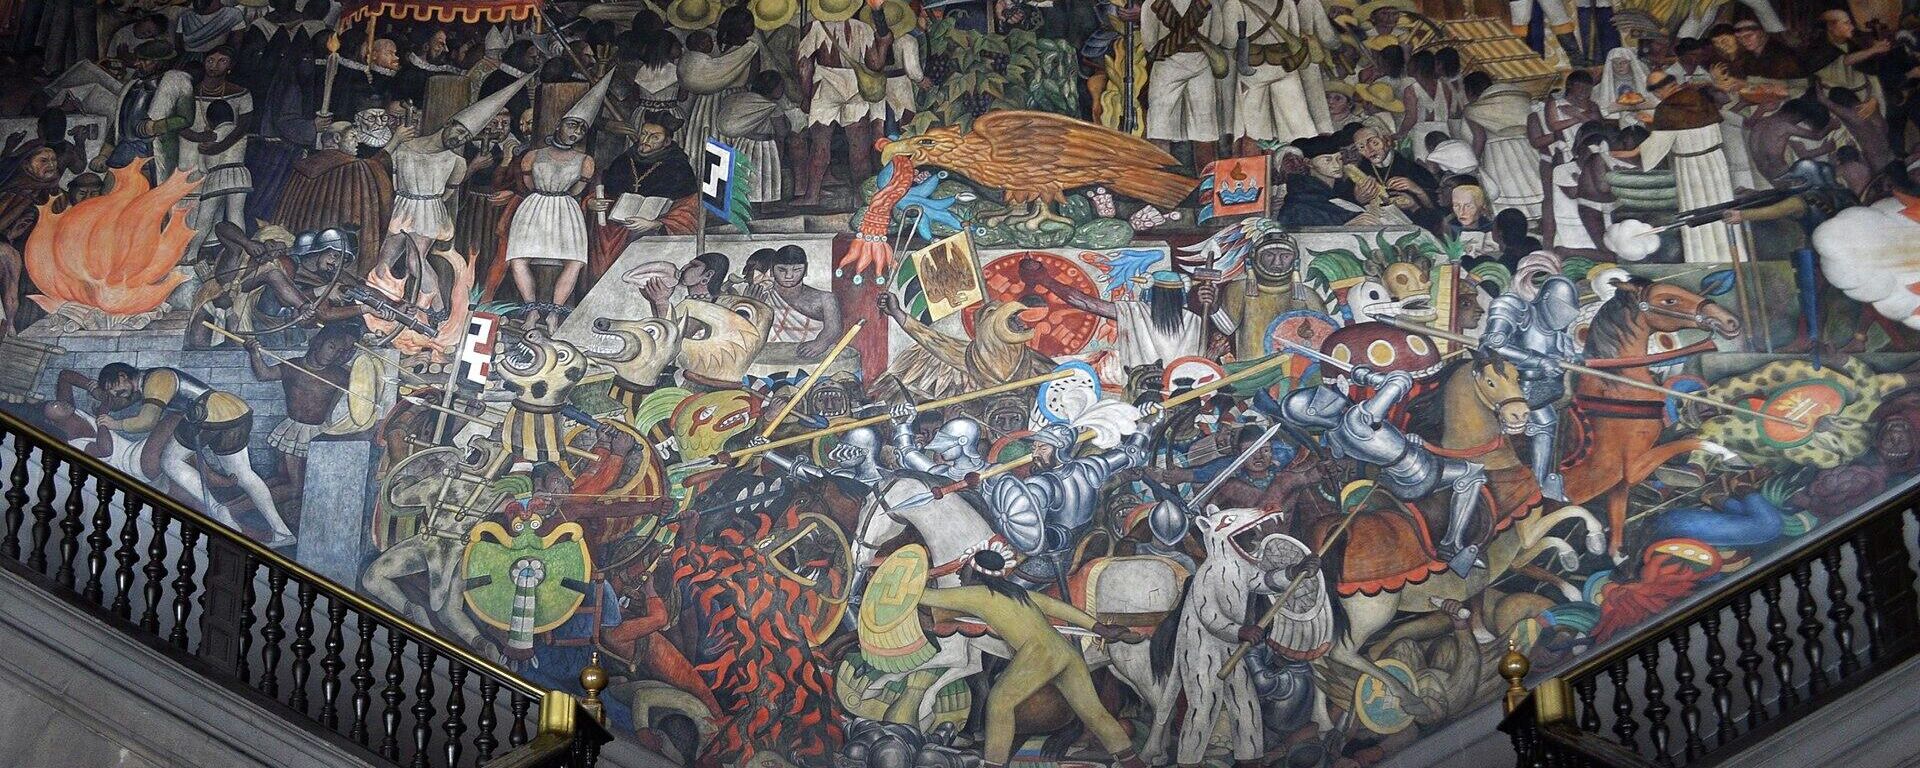 Epopeya del pueblo mexicano (1935), mural de Diego Rivera en CDMX.  - Sputnik Mundo, 1920, 09.12.2021